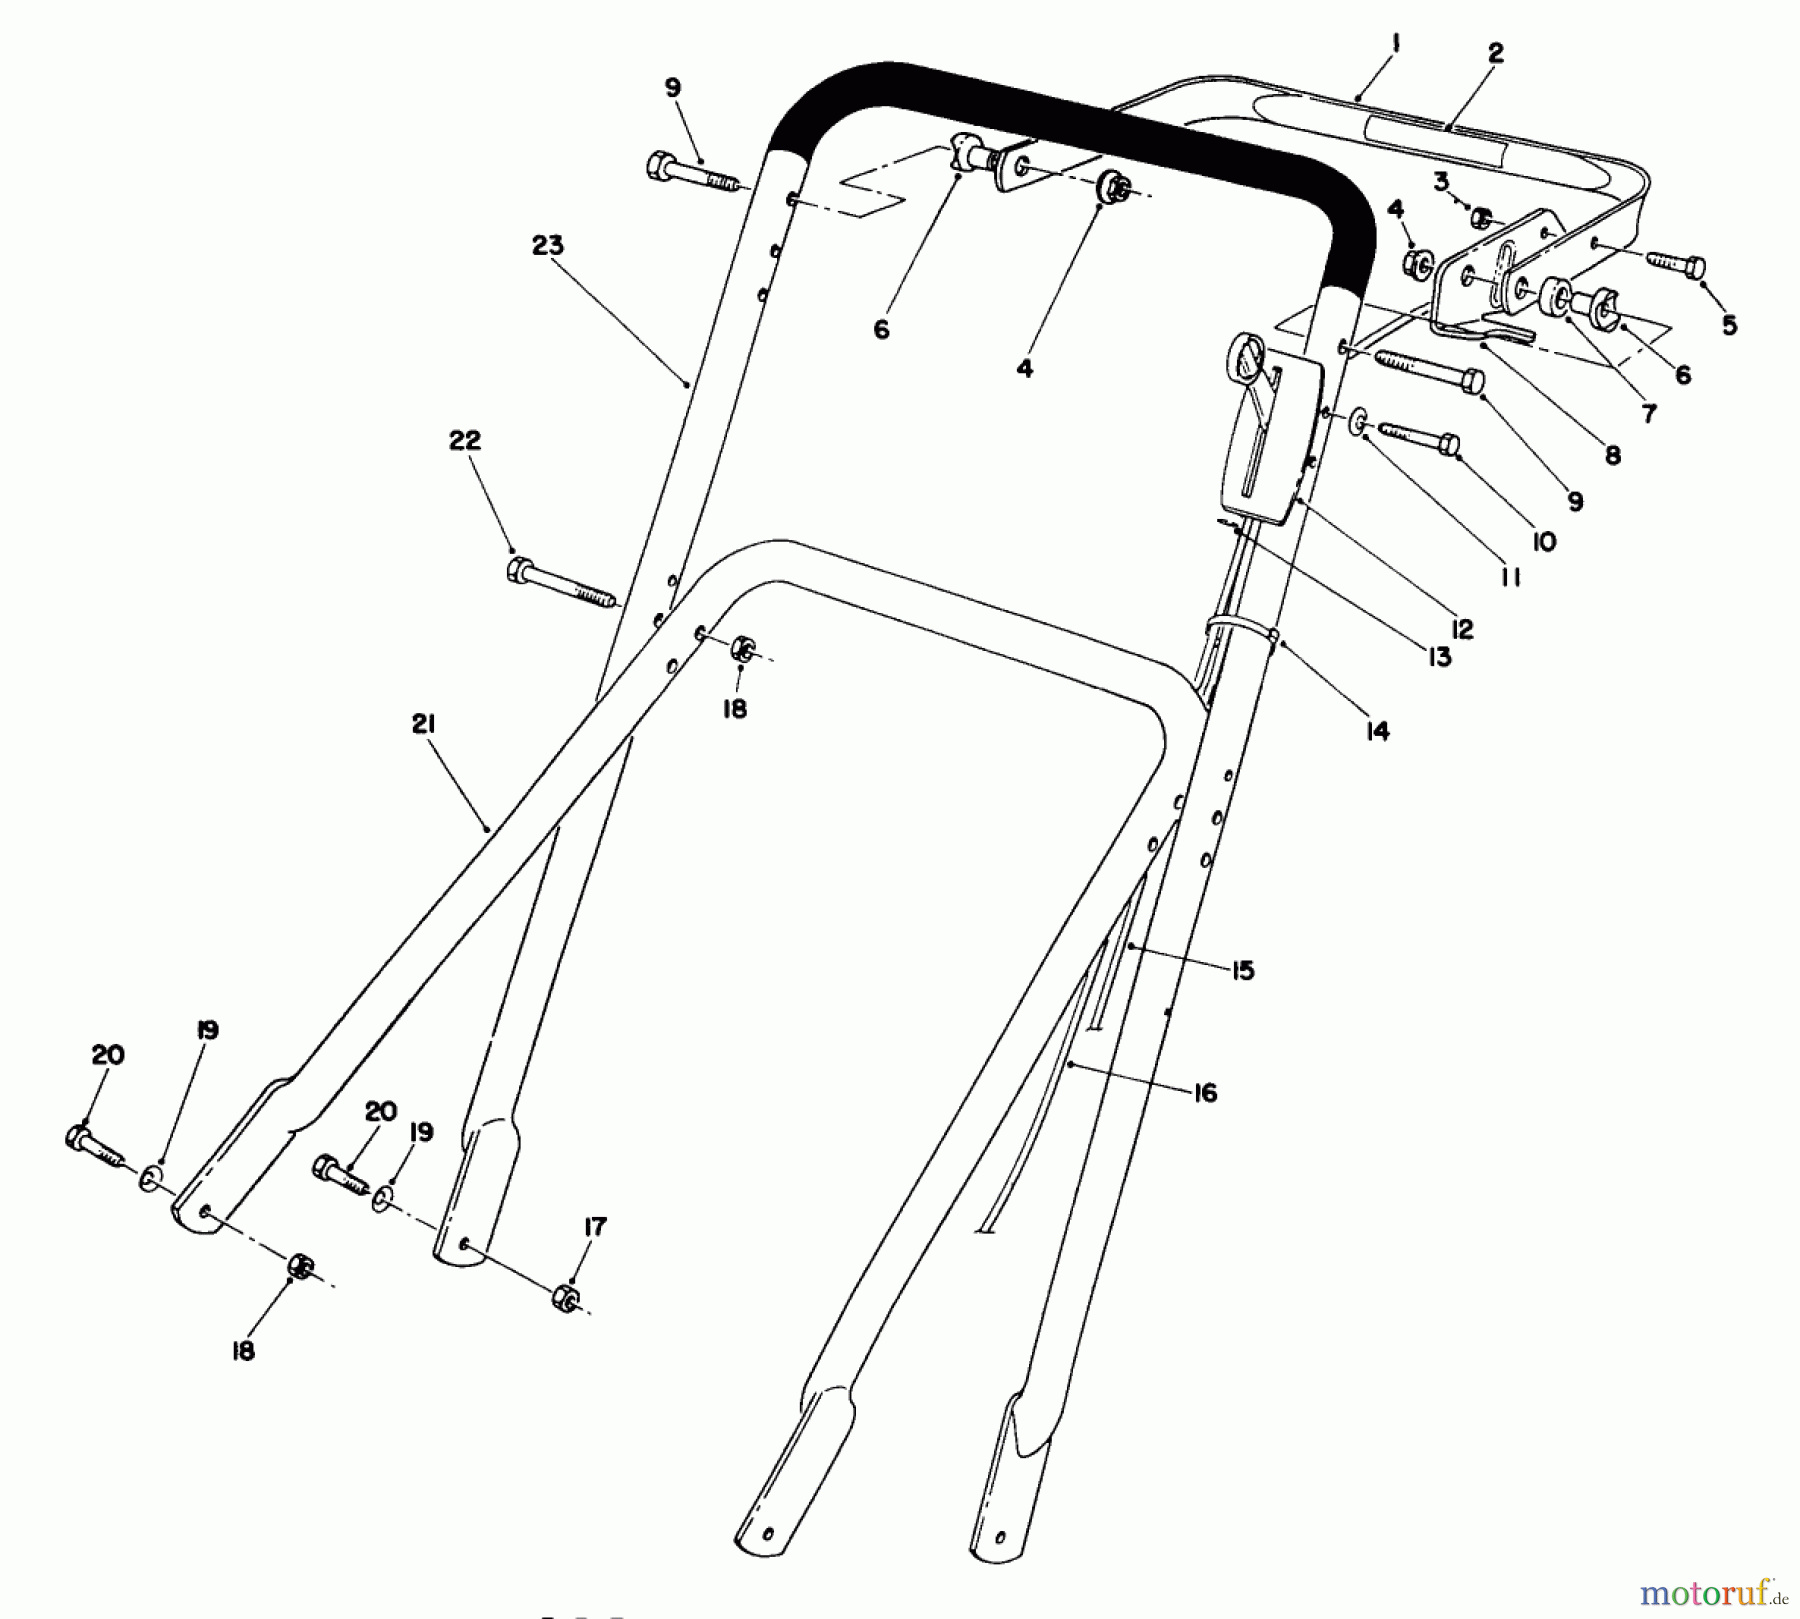  Toro Neu Mowers, Walk-Behind Seite 2 22700 - Toro Lawnmower, 1992 (2000001-2999999) HANDLE ASSEMBLY